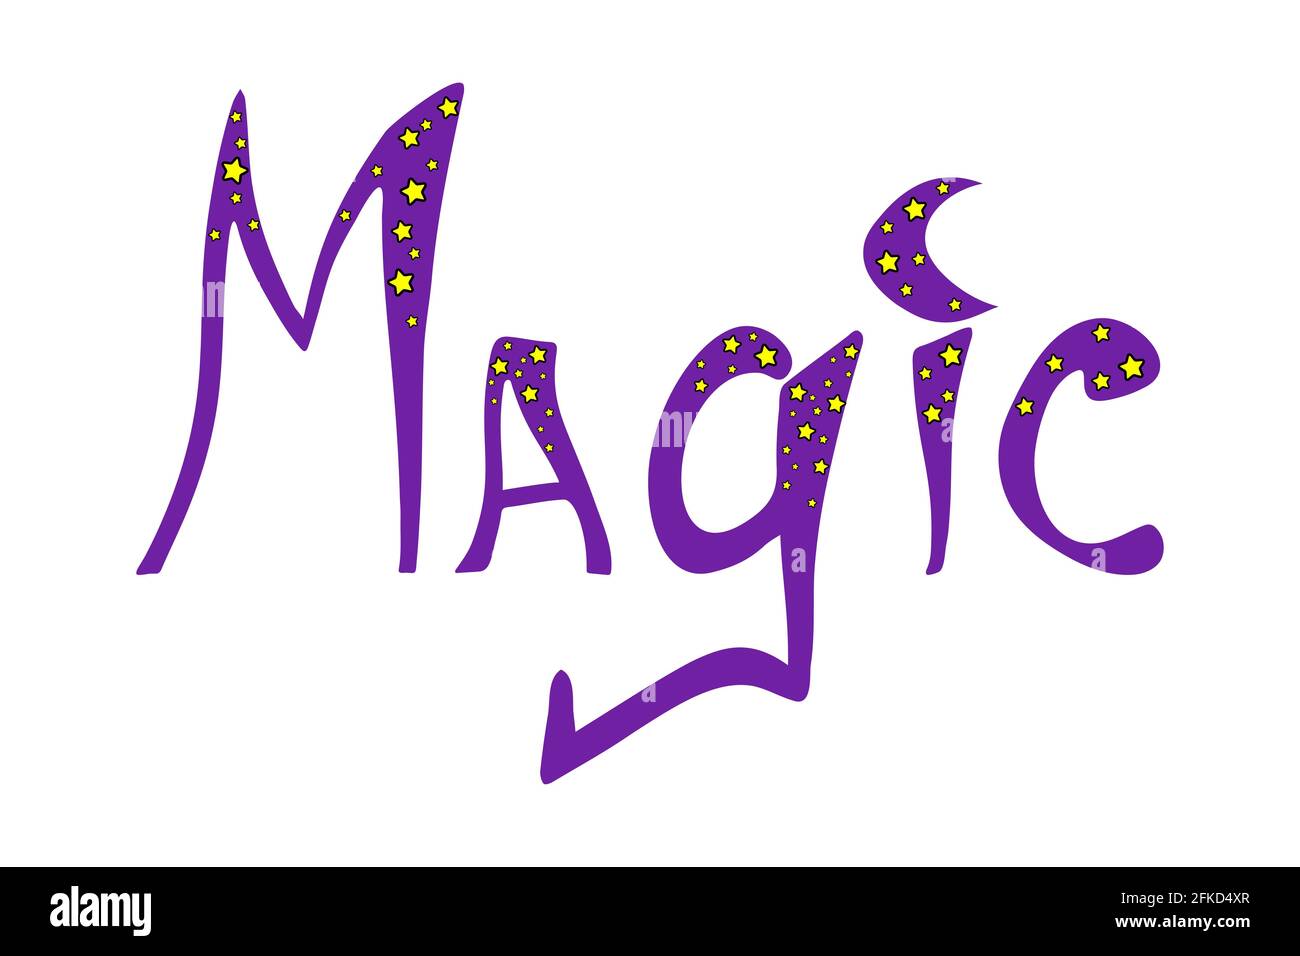 Handgezeichnetes Wort - Magie - mit Sternen Stock Vektor